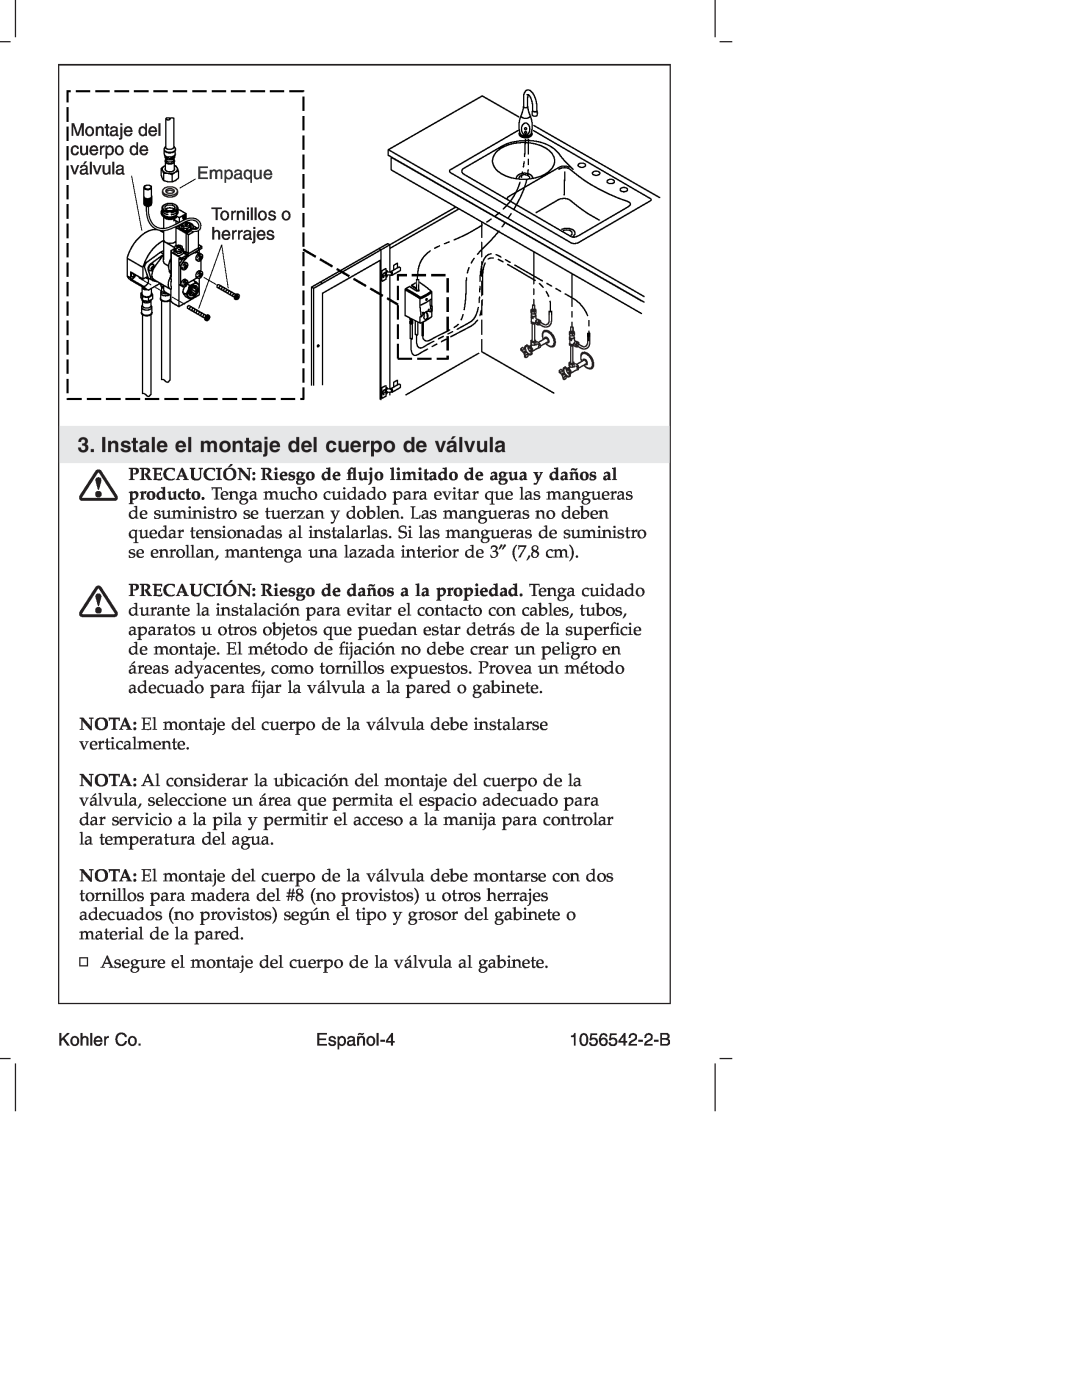 Kohler K-10103 manual Instale el montaje del cuerpo de válvula, Montaje del cuerpo de válvula Empaque, Tornillos o herrajes 